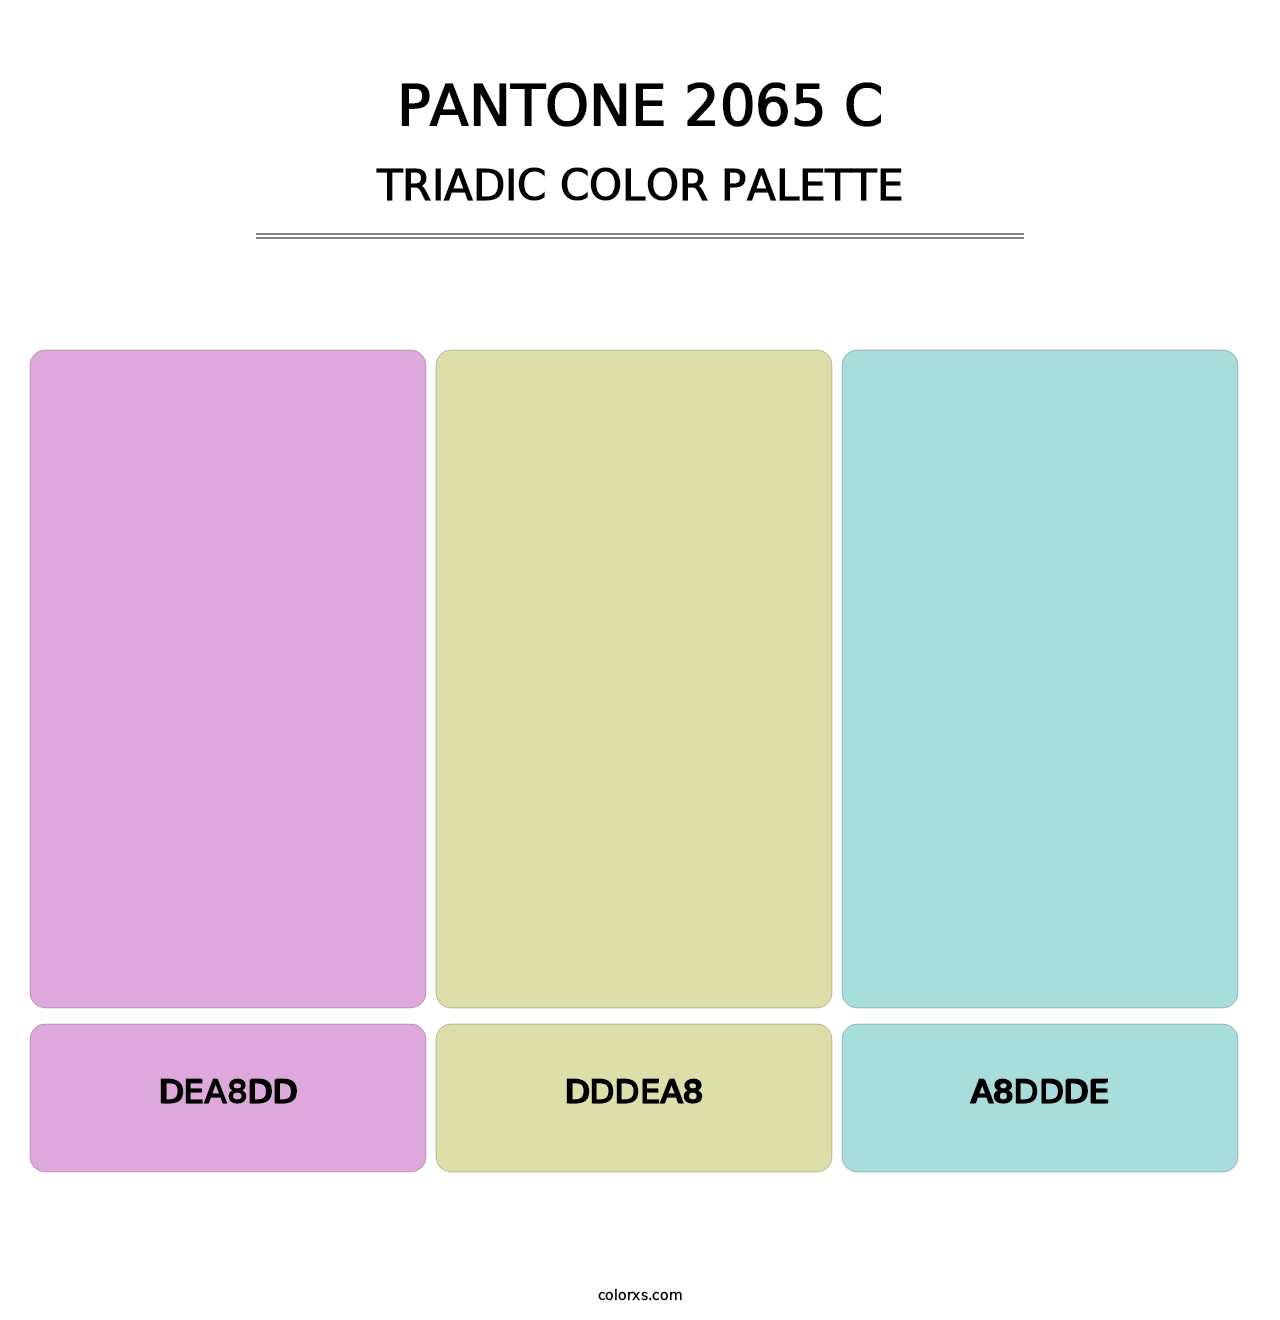 PANTONE 2065 C - Triadic Color Palette